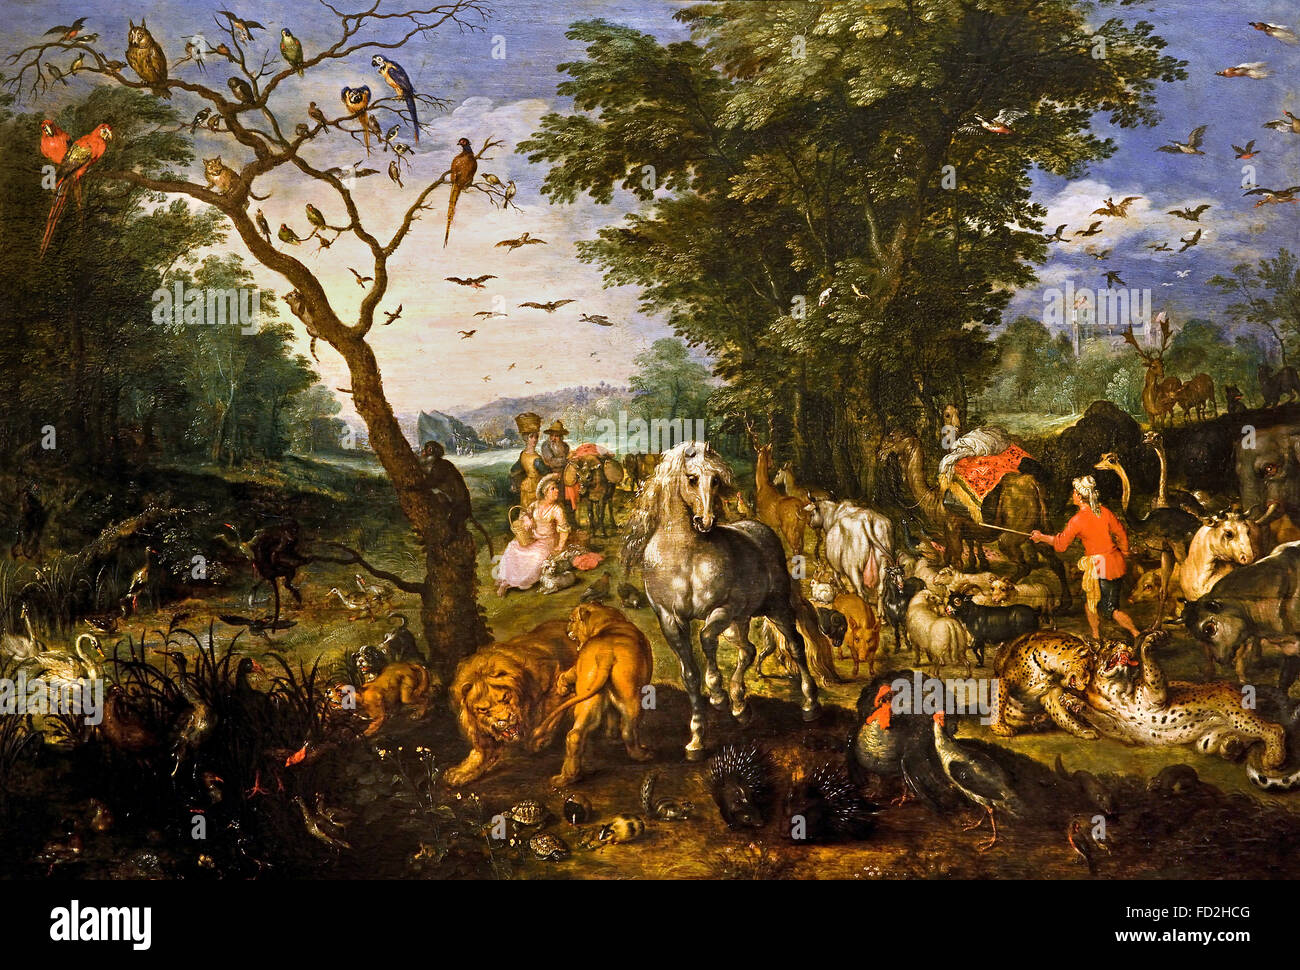 Imbarco Animali dell'arca di Noè di Jan II Brueghel 1601-78 Belgio fiammingo Noè un patriarca biblico che costruì un'arca per salvare ogni tipo di animale dalla Grande alluvione. La narrazione delle alluvioni della Genesi è tra le storie più conosciute della Bibbia. Foto Stock